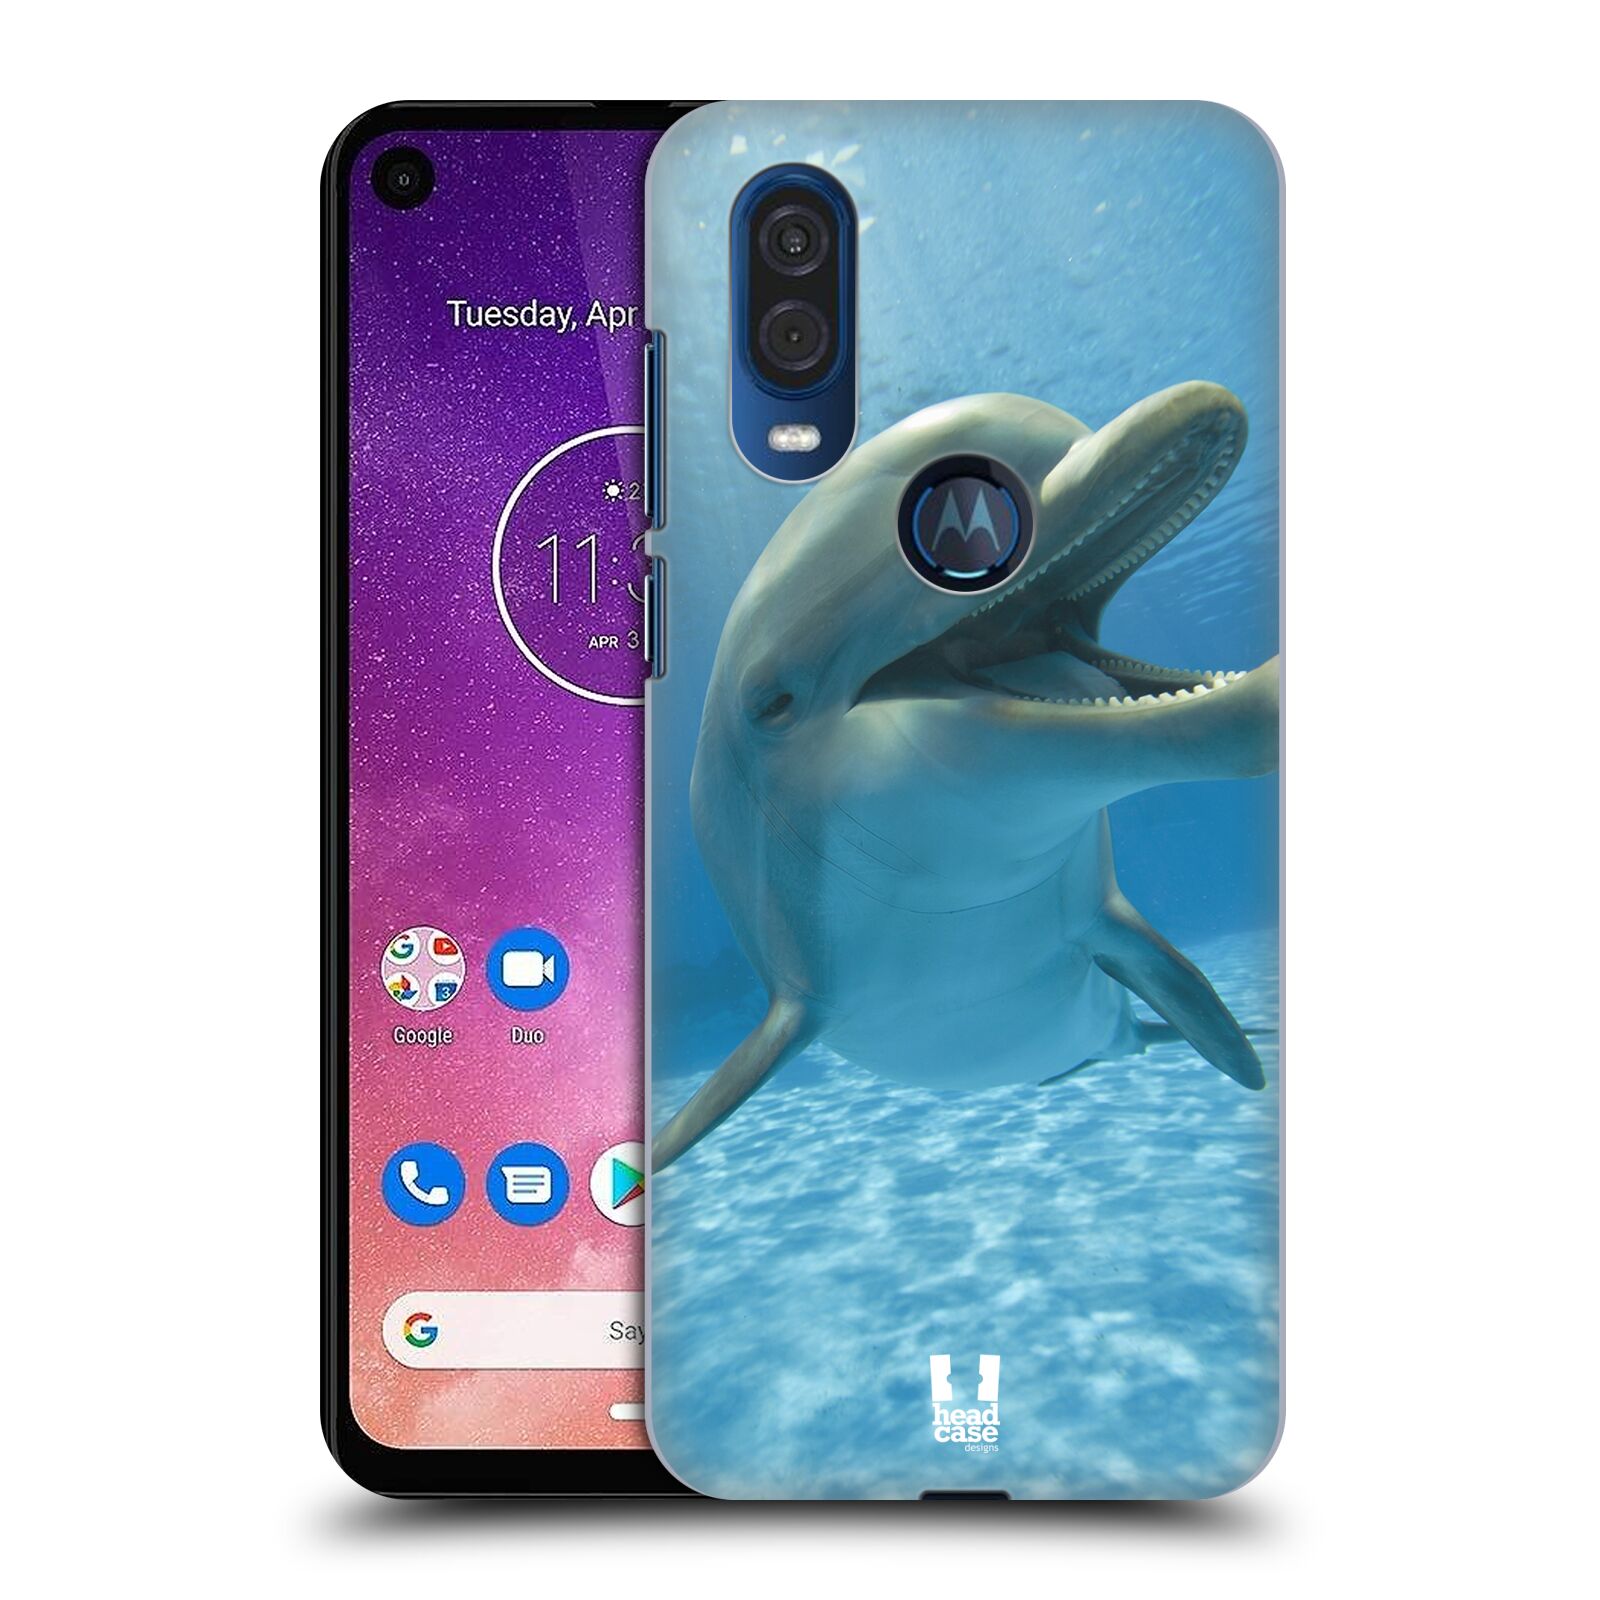 Zadní obal pro mobil Motorola One Vision - HEAD CASE - Svět zvířat delfín v moři